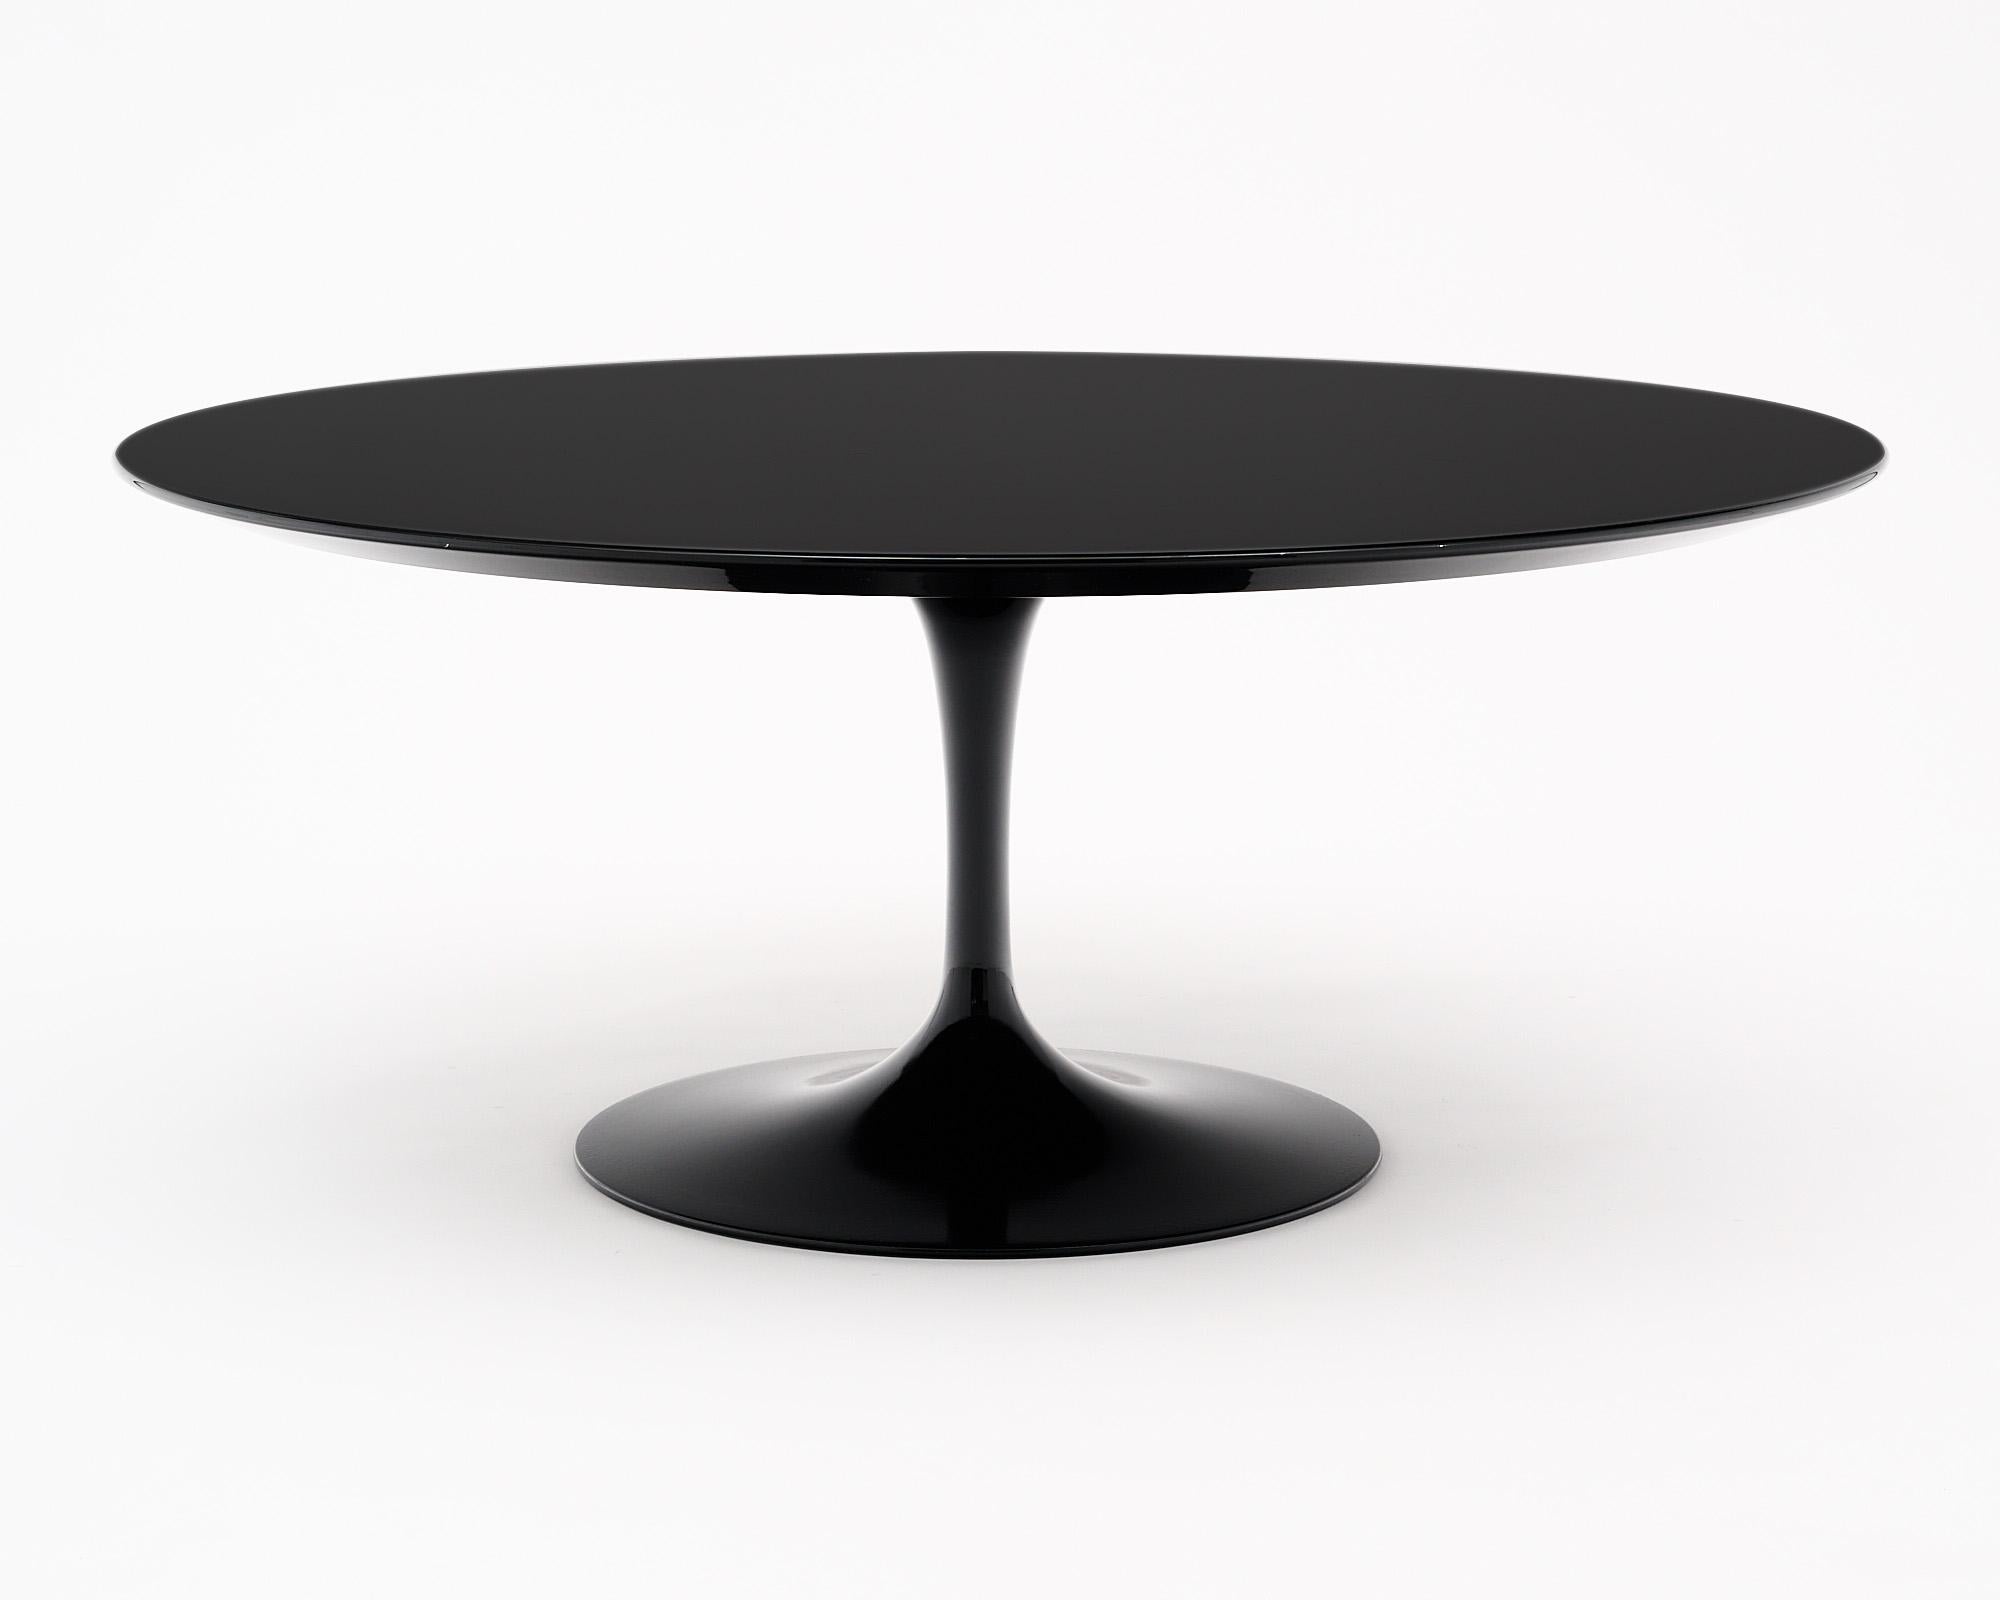 Coffee table, Saarinen Knoll, made of black molded acrylic.